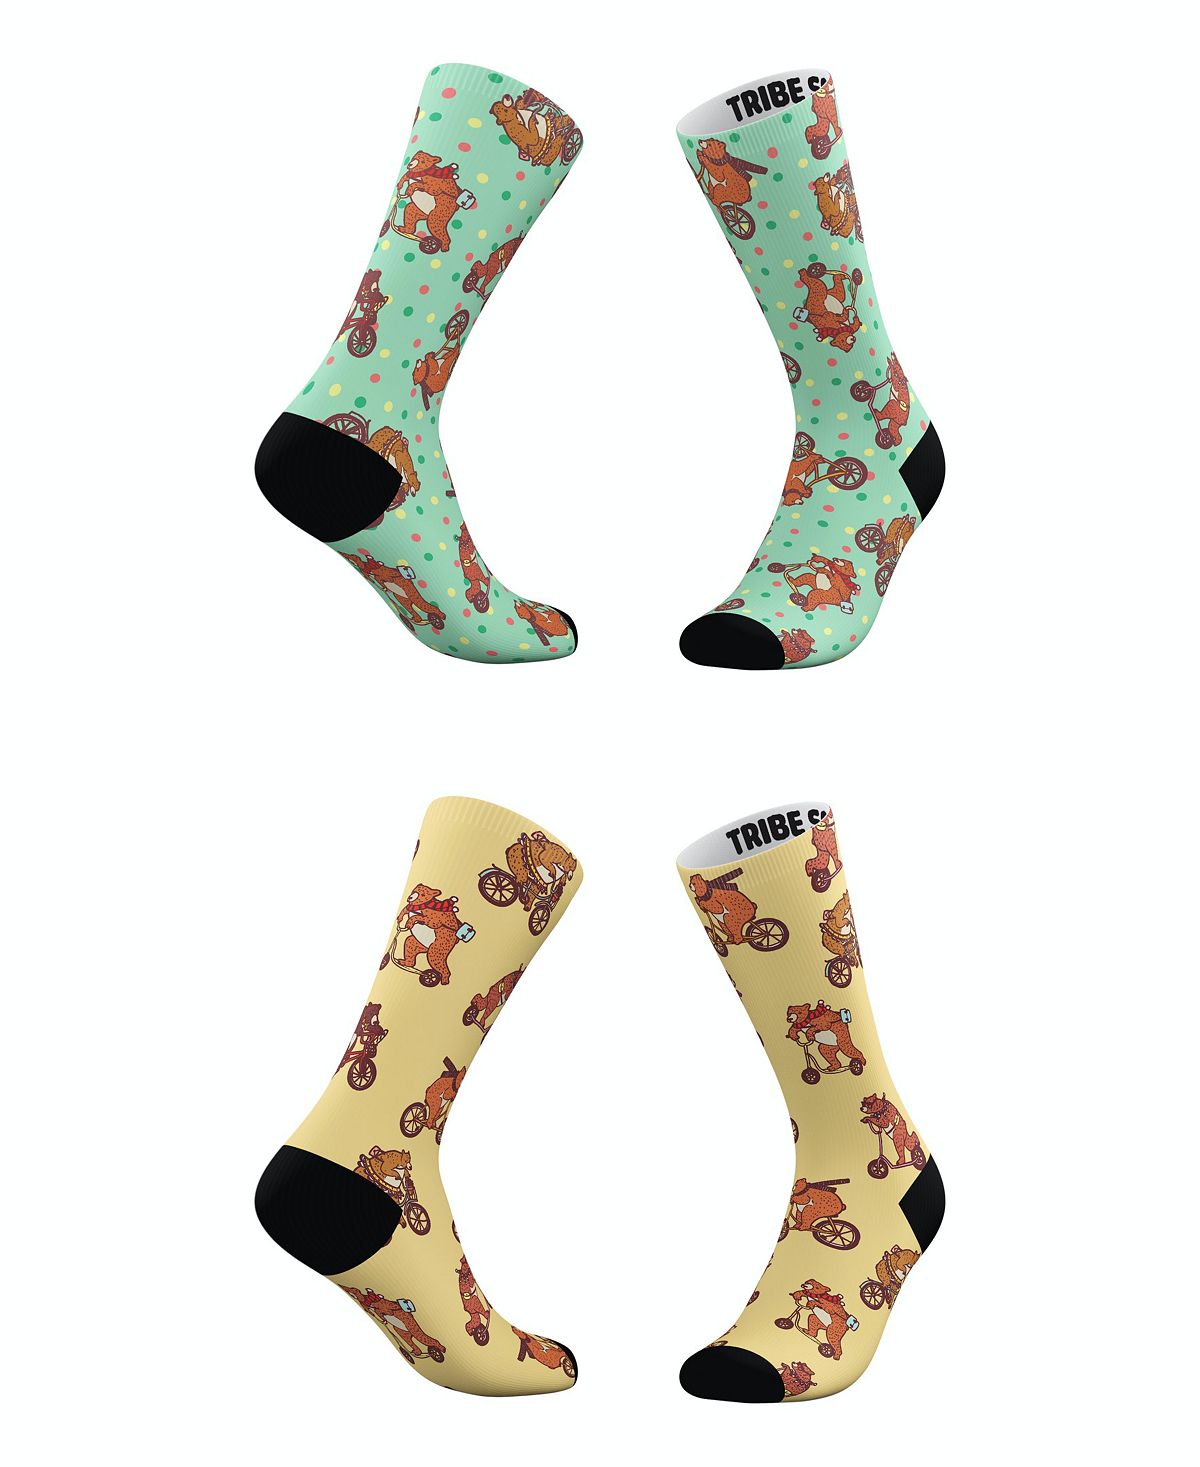 Мужские и женские носки Hipster Bears, набор из 2 штук Tribe Socks kentucky strip mop refill 1 piece per pack assorted colors